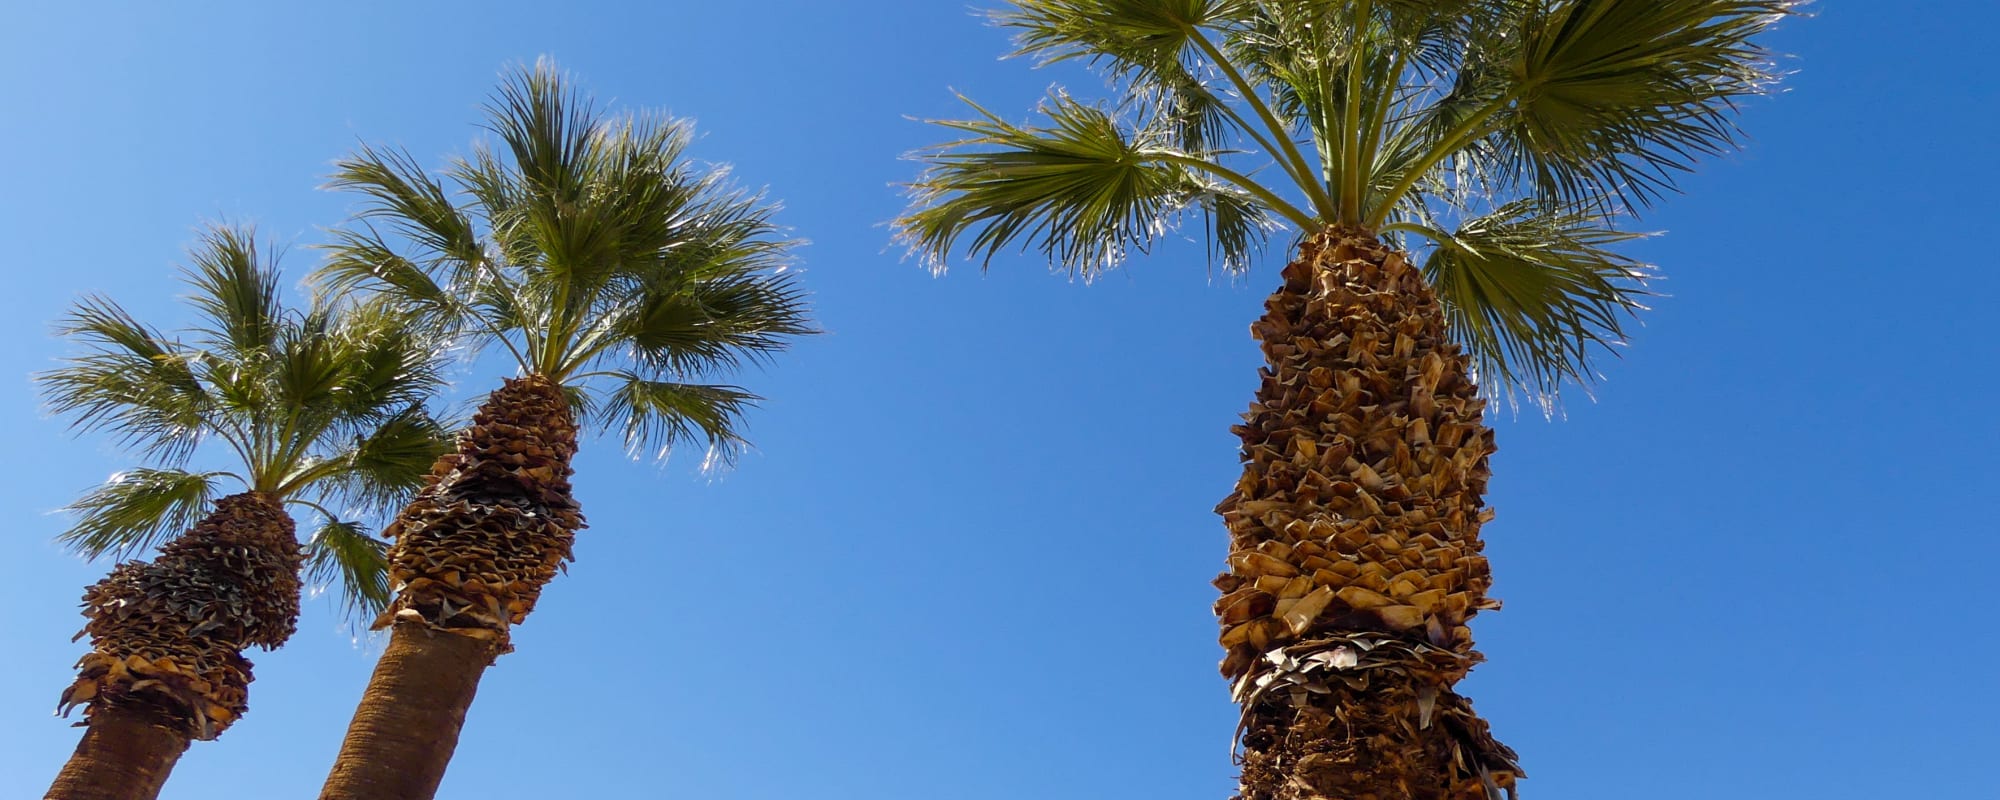 Palm Trees in Fairway Heights in Twentynine Palms, California